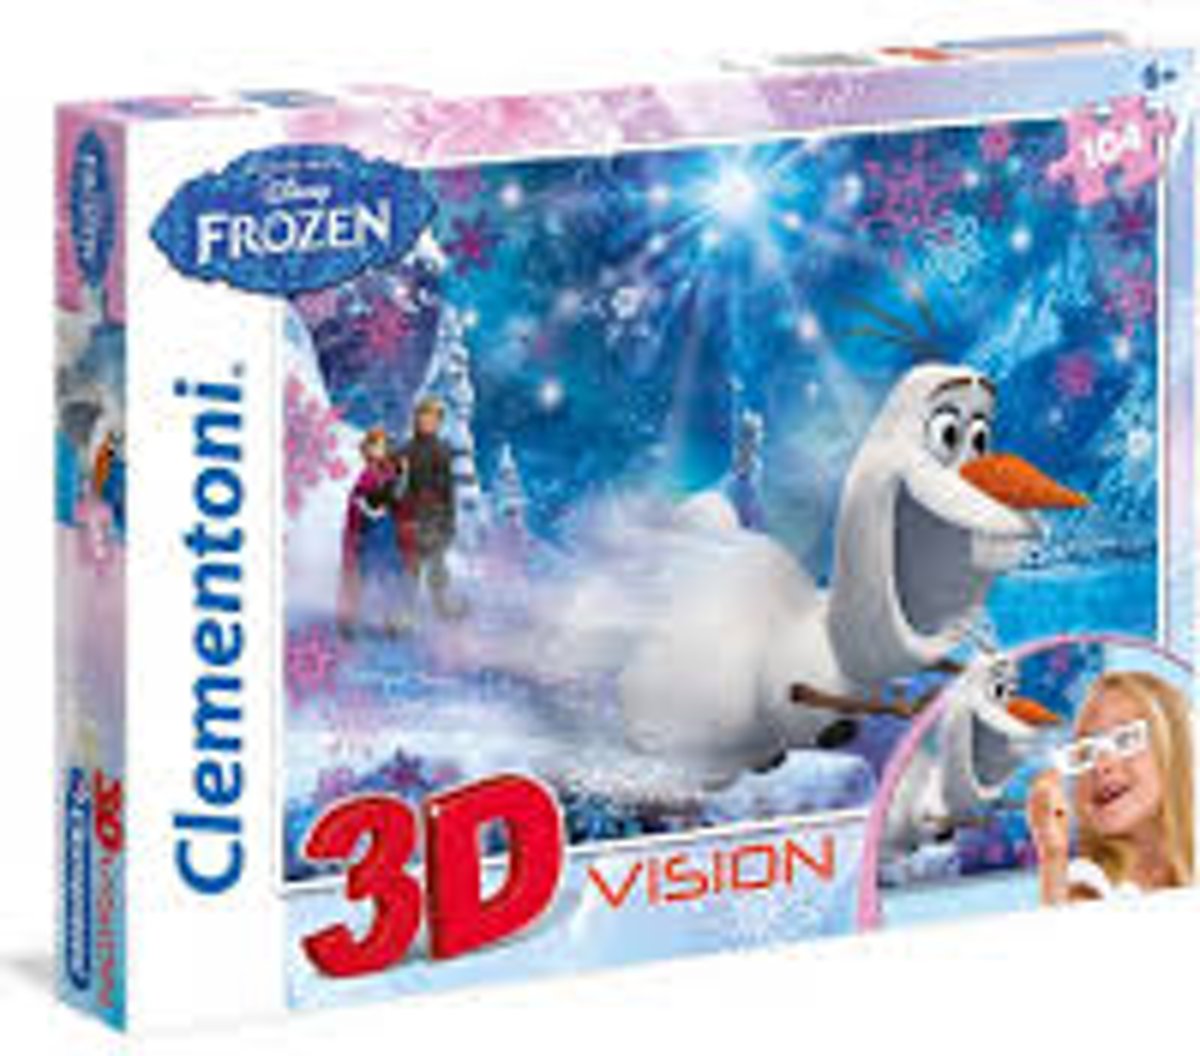 Frozen puzzel 3D vision